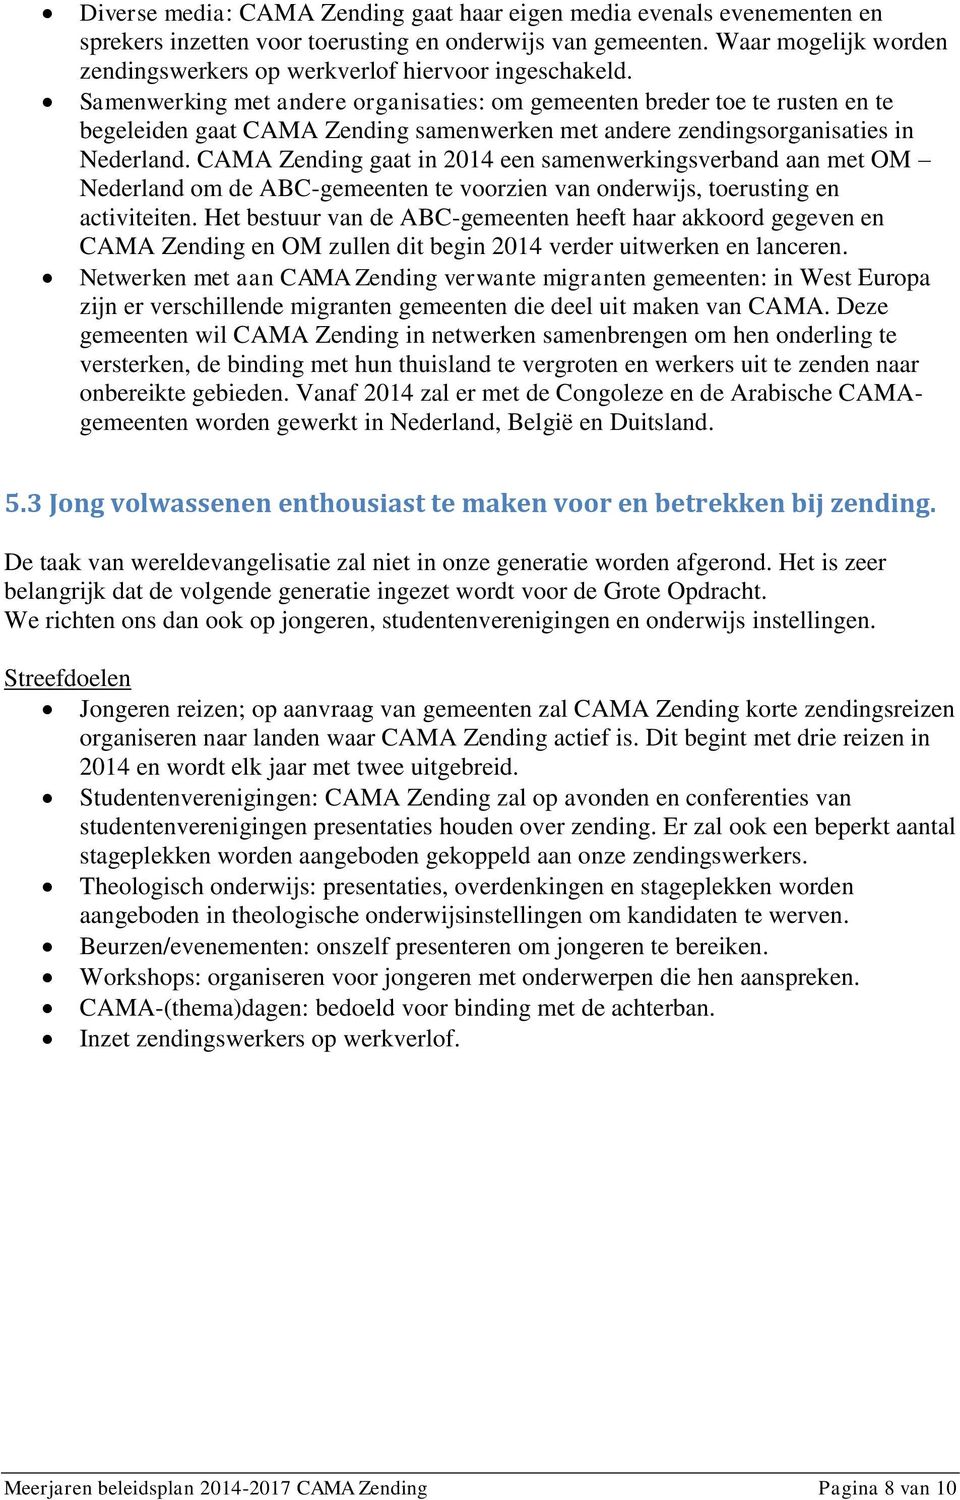 Samenwerking met andere organisaties: om gemeenten breder toe te rusten en te begeleiden gaat CAMA Zending samenwerken met andere zendingsorganisaties in Nederland.